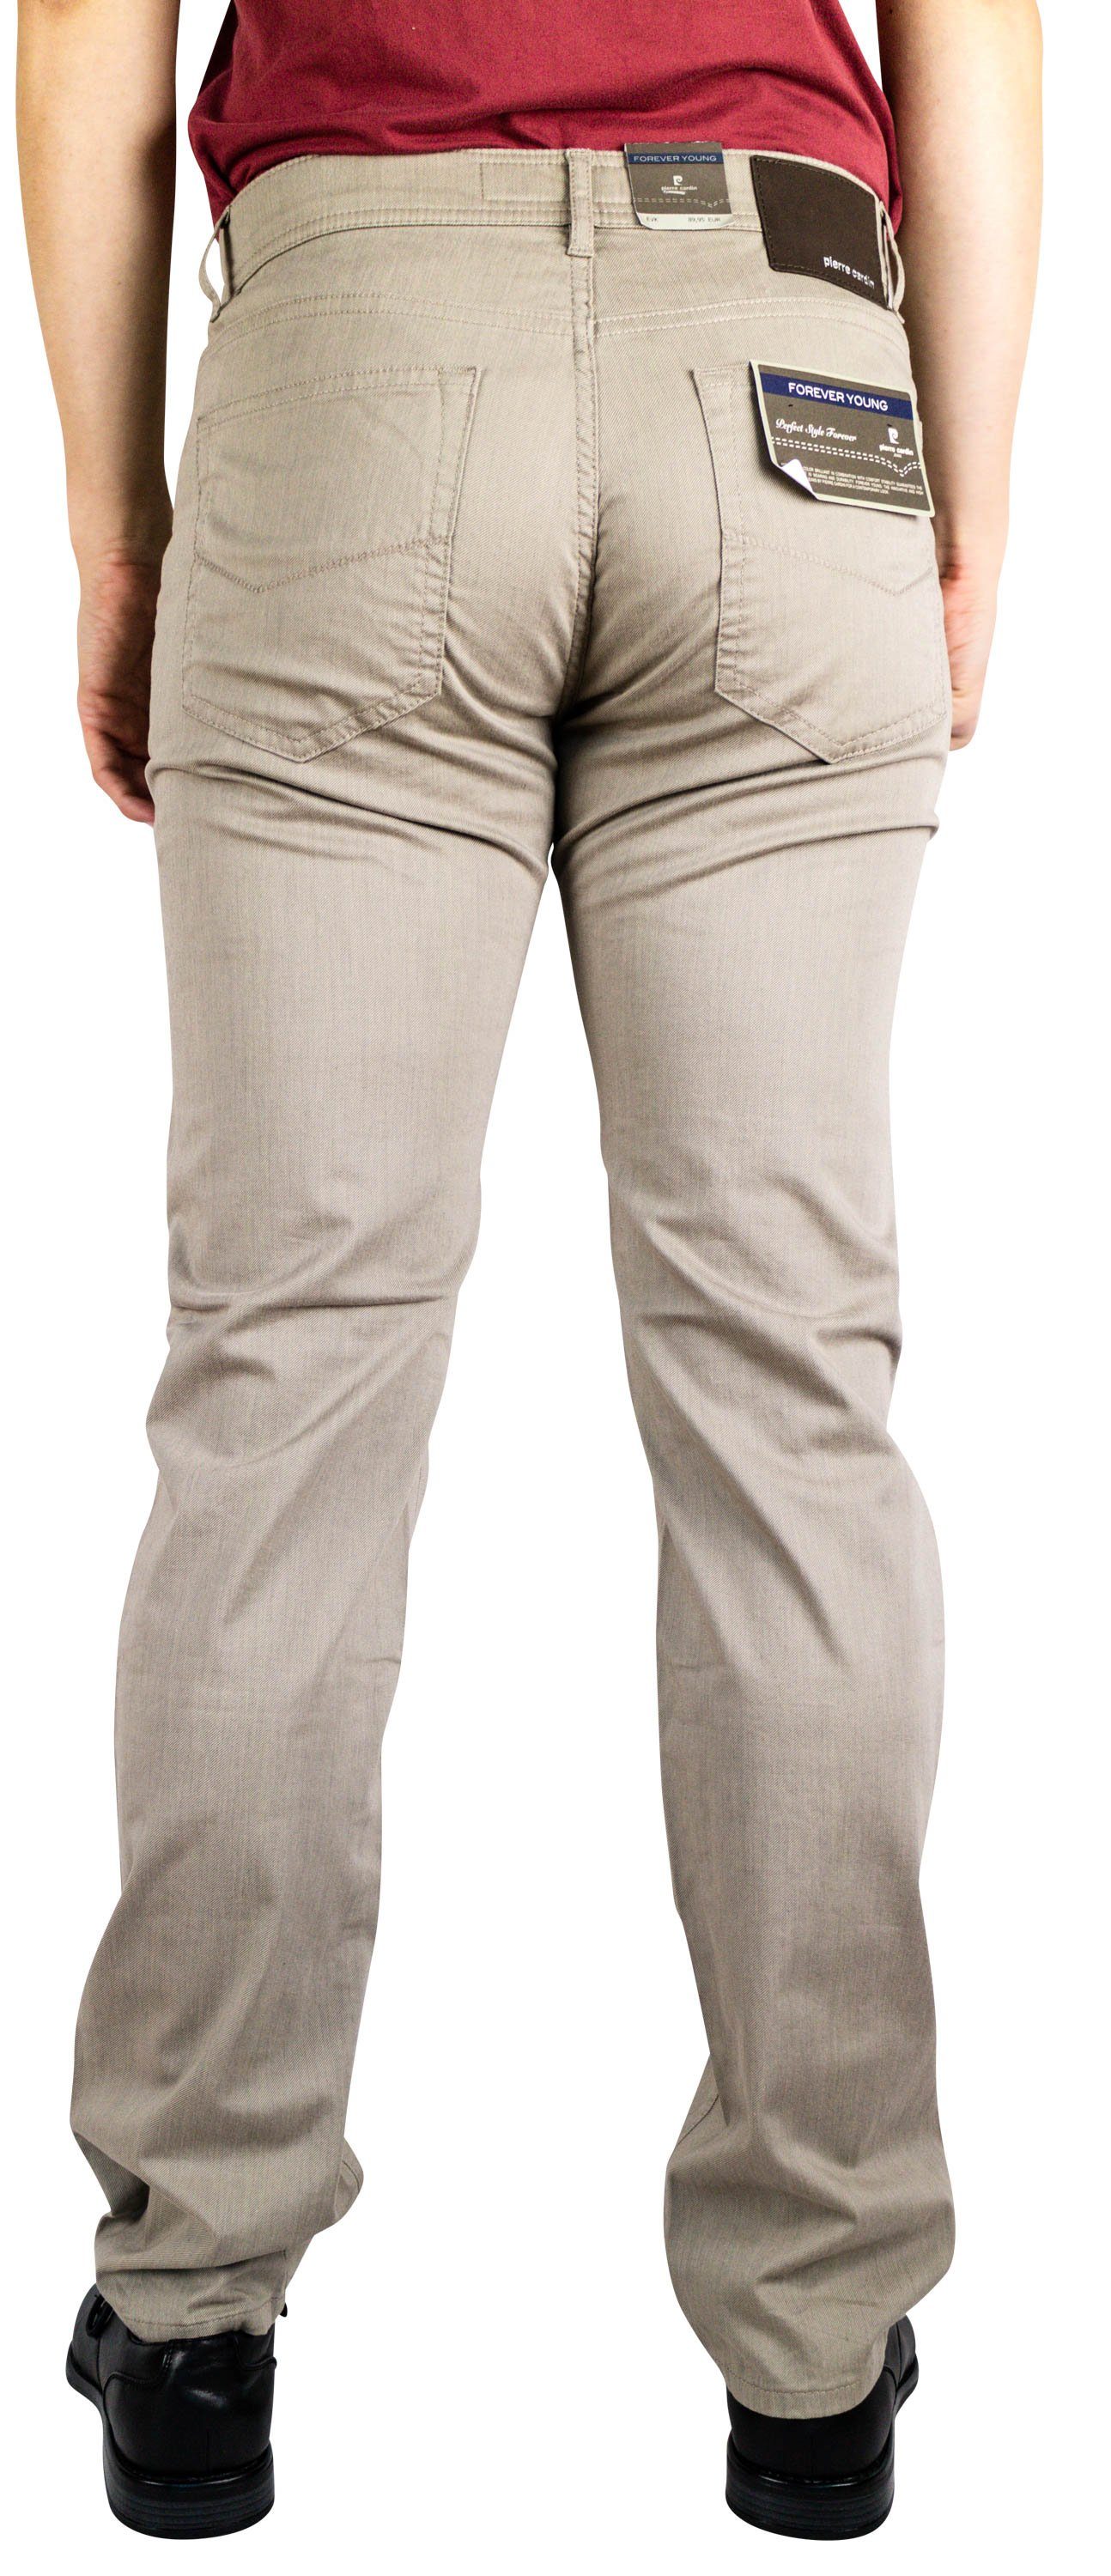 LYON sand Cardin 5-Pocket-Jeans 2280.25 beige PIERRE 3091 Pierre CARDIN